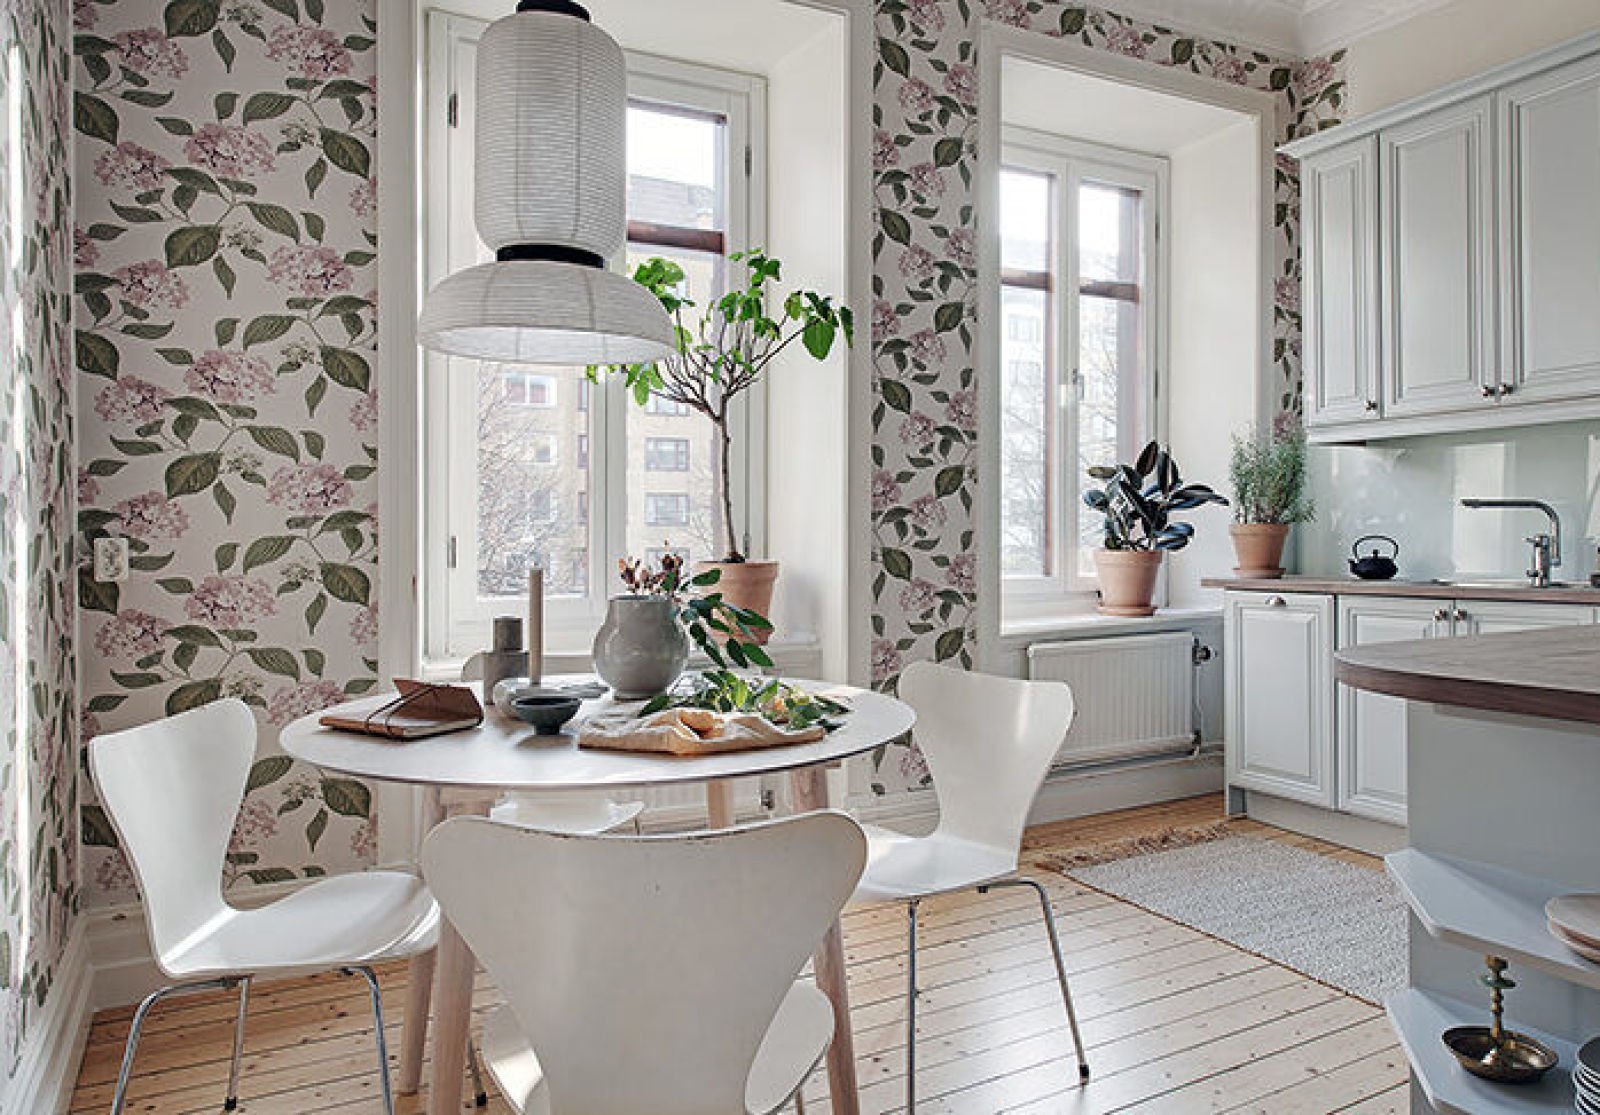 Ремонт на кухне обои. Декор для кухни. Обои для кухни. Кухня обои цветочные Скандинавский стиль. Красивые стены на кухне.